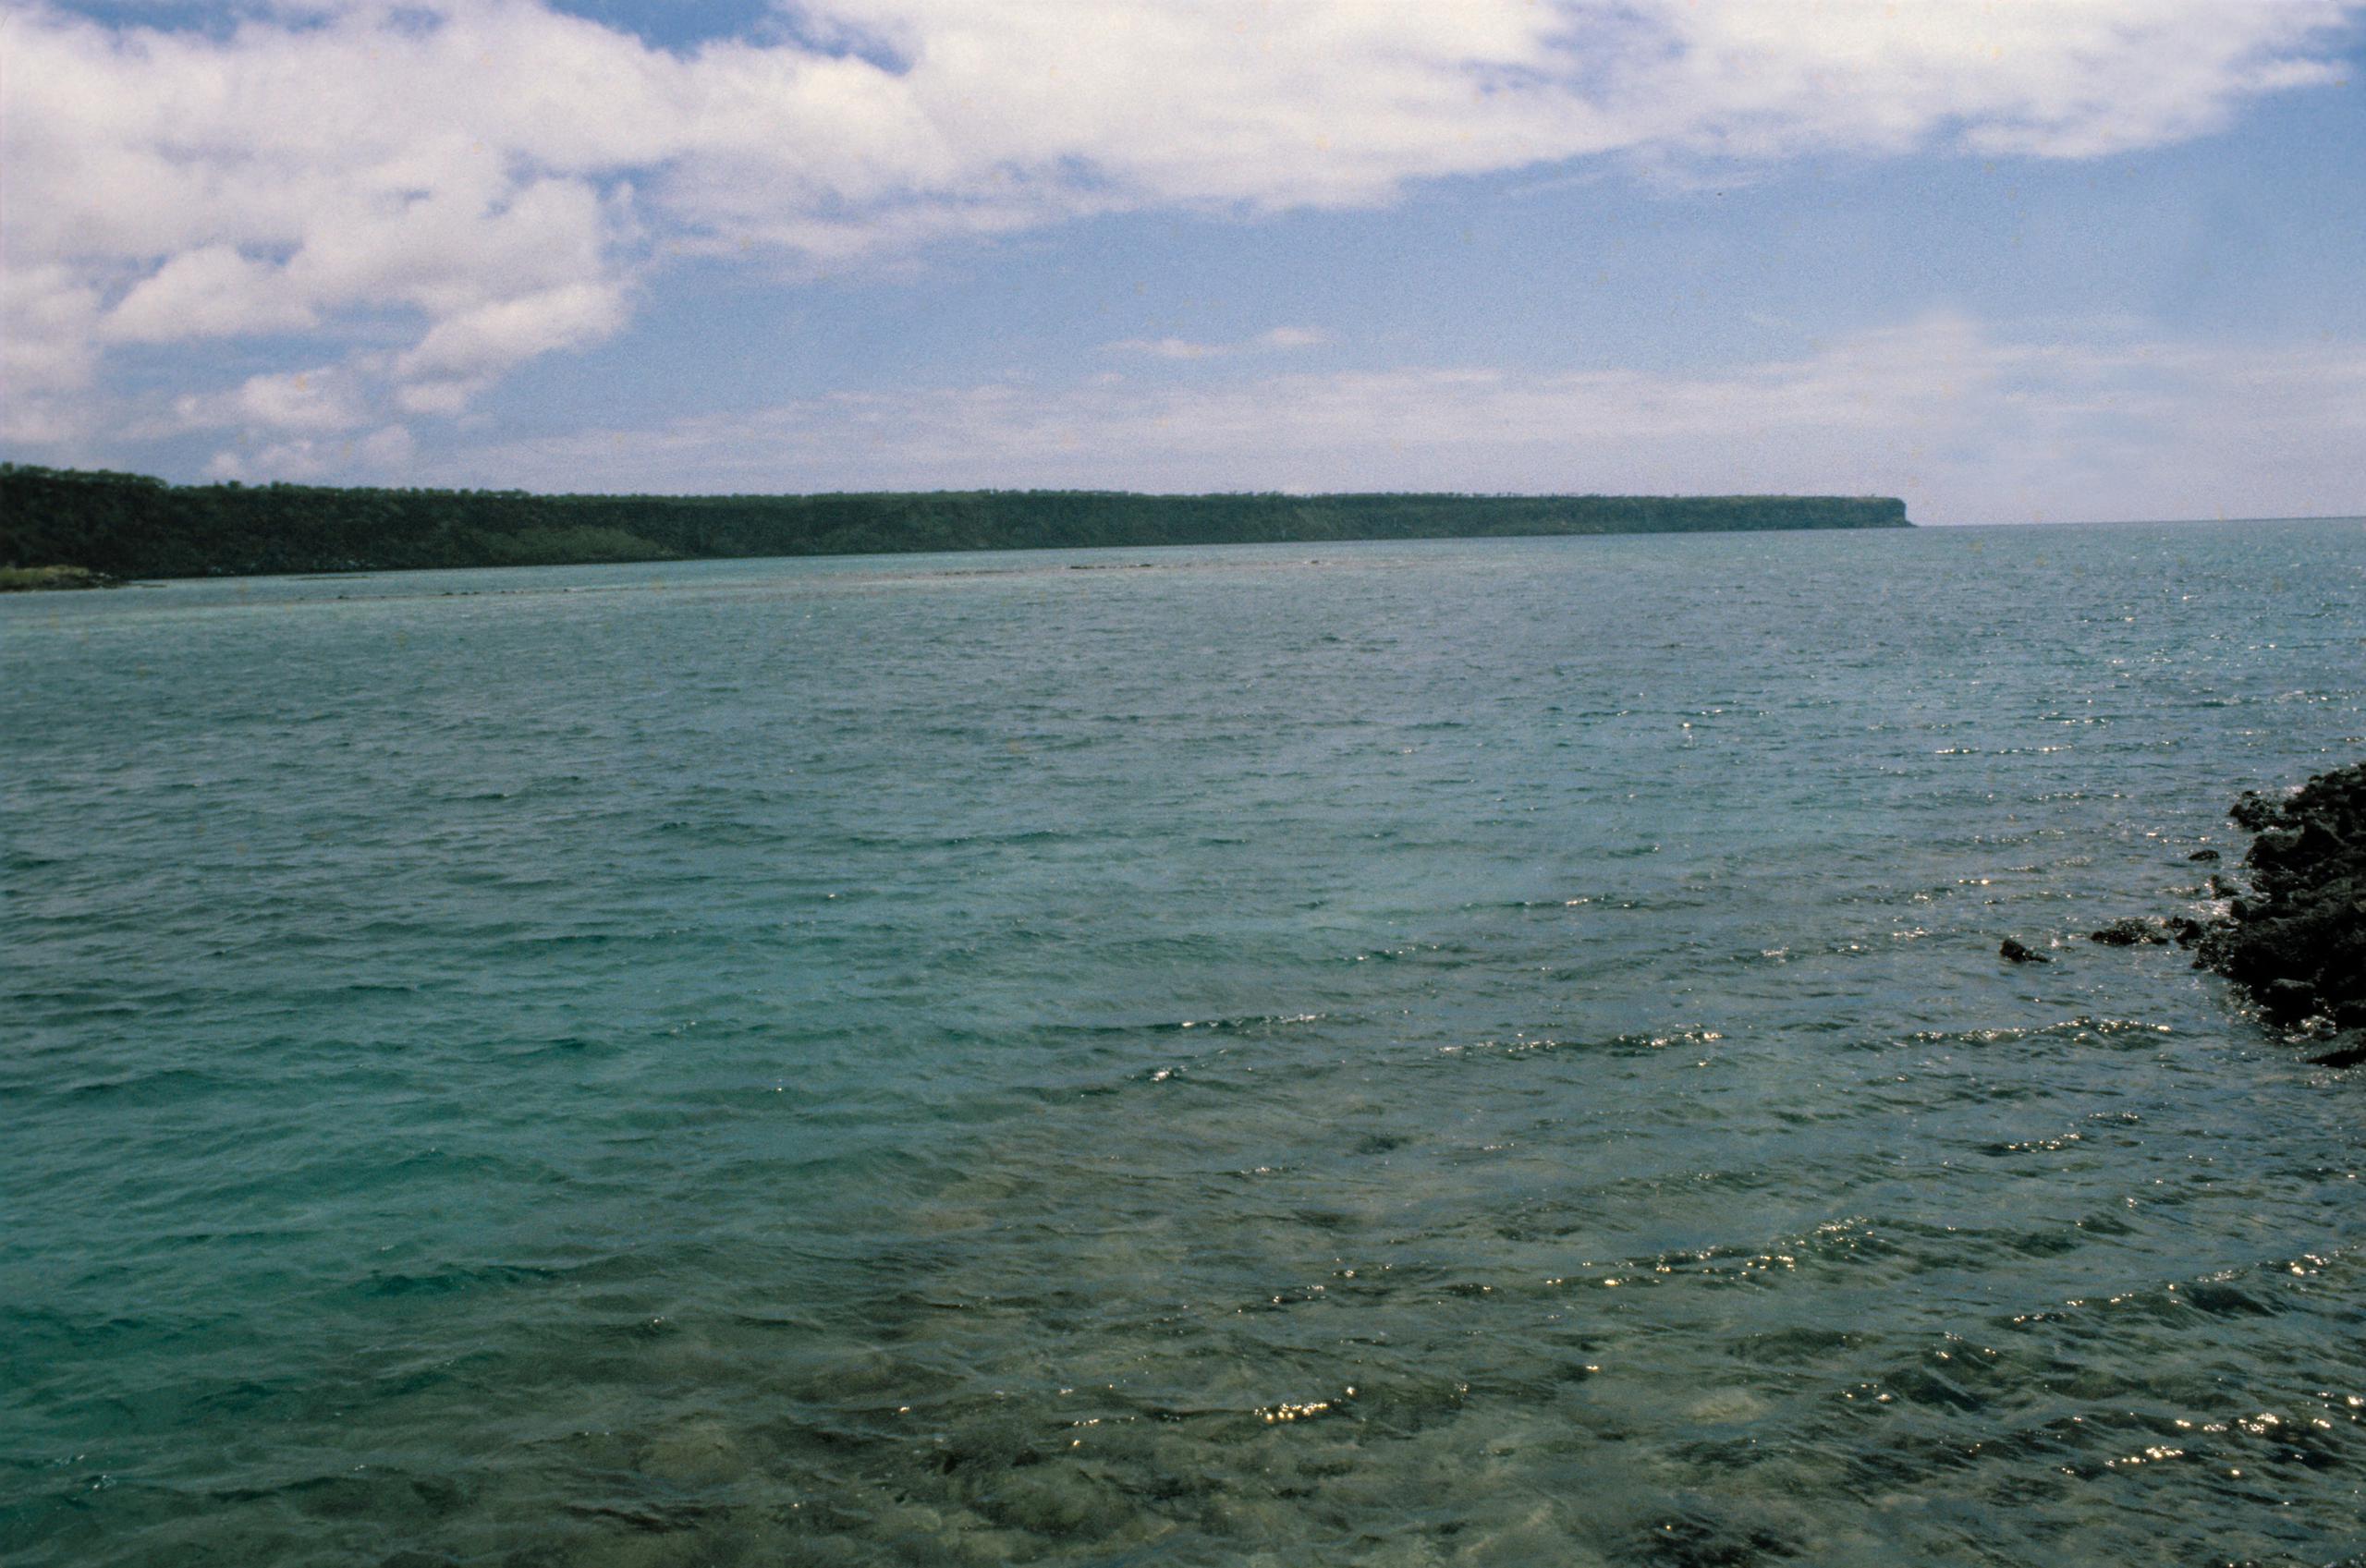 La Dirección del Parque Nacional Galápagos (PNG) informó que la embarcación de turismo "Albatros" naufragó en la bahía Academia, en la Isla Santa Cruz, ante lo cual se emprendieron "acciones inmediatas para reducir los impactos del siniestro sobre los ecosistemas marinos". En la imagen un registro de archivo de una de las isla del archipiélago de las Galápagos.